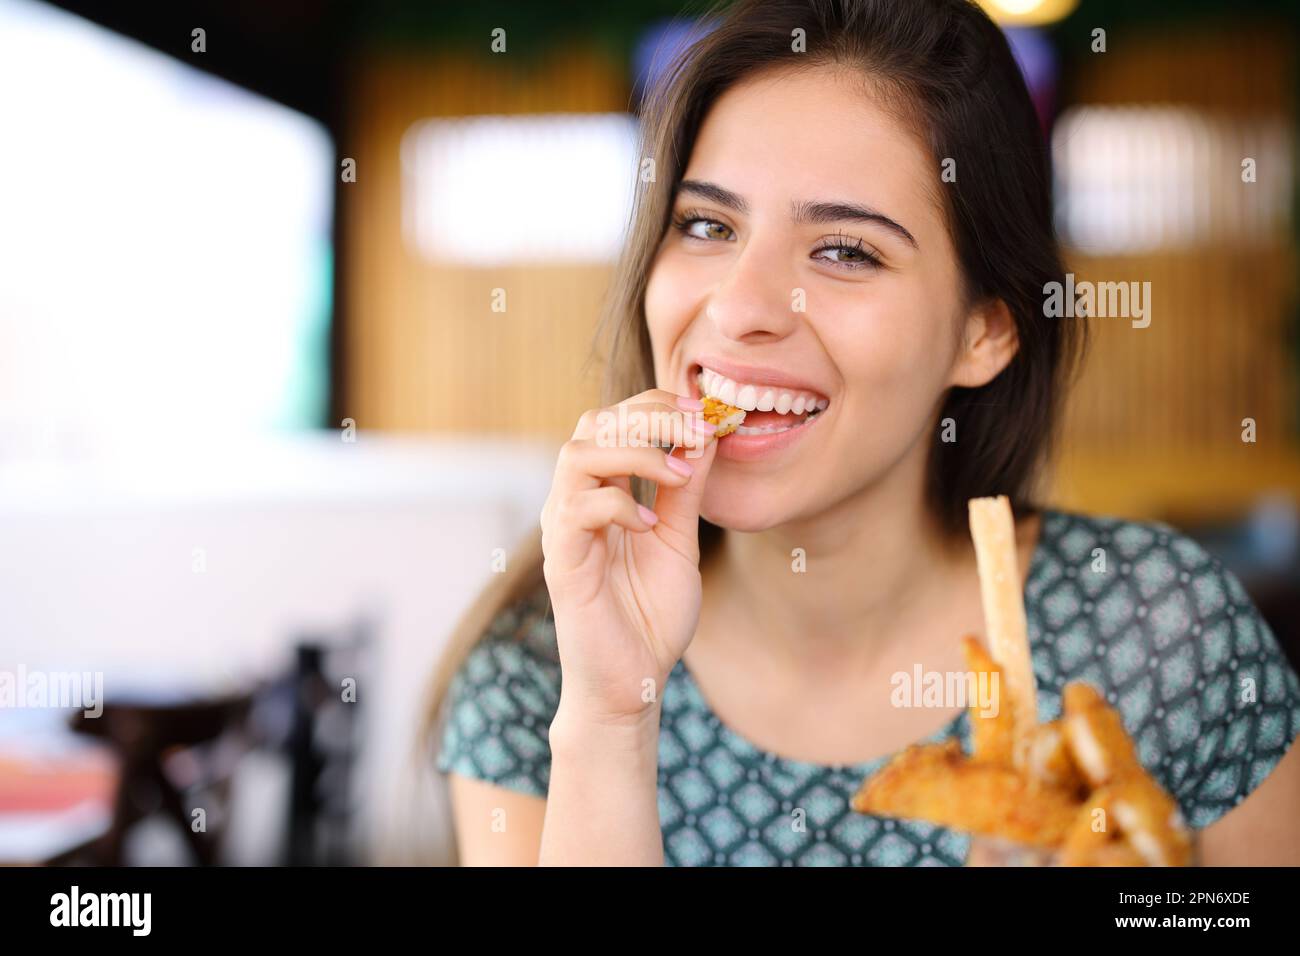 Bonne femme mangeant des doigts de poulet en regardant l'appareil photo dans un restaurant Banque D'Images